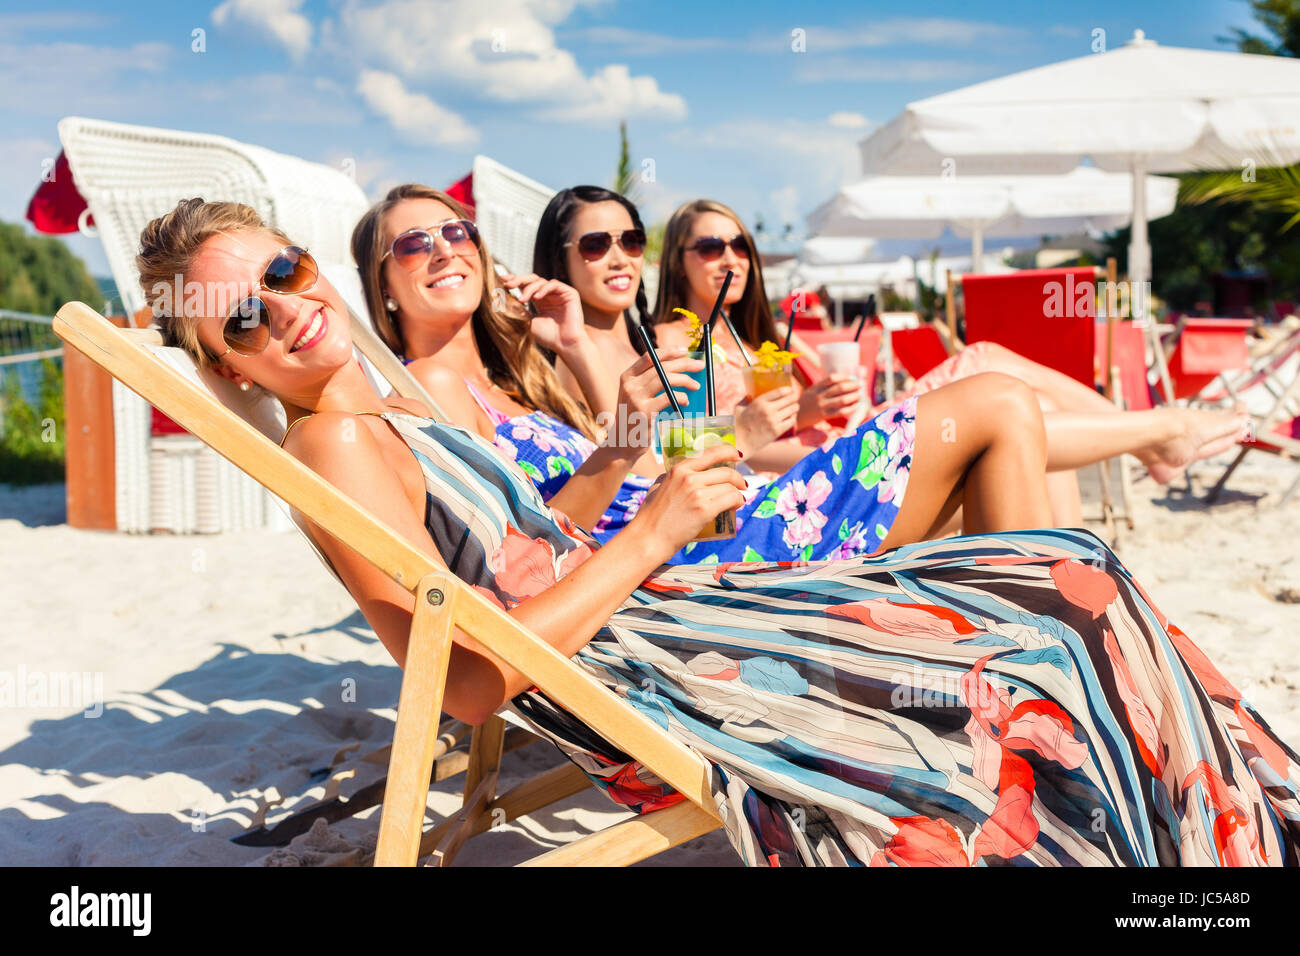 Vier Frauen Am Strand Liege Bräunen In Der Sonne Liegen Stockfotografie 